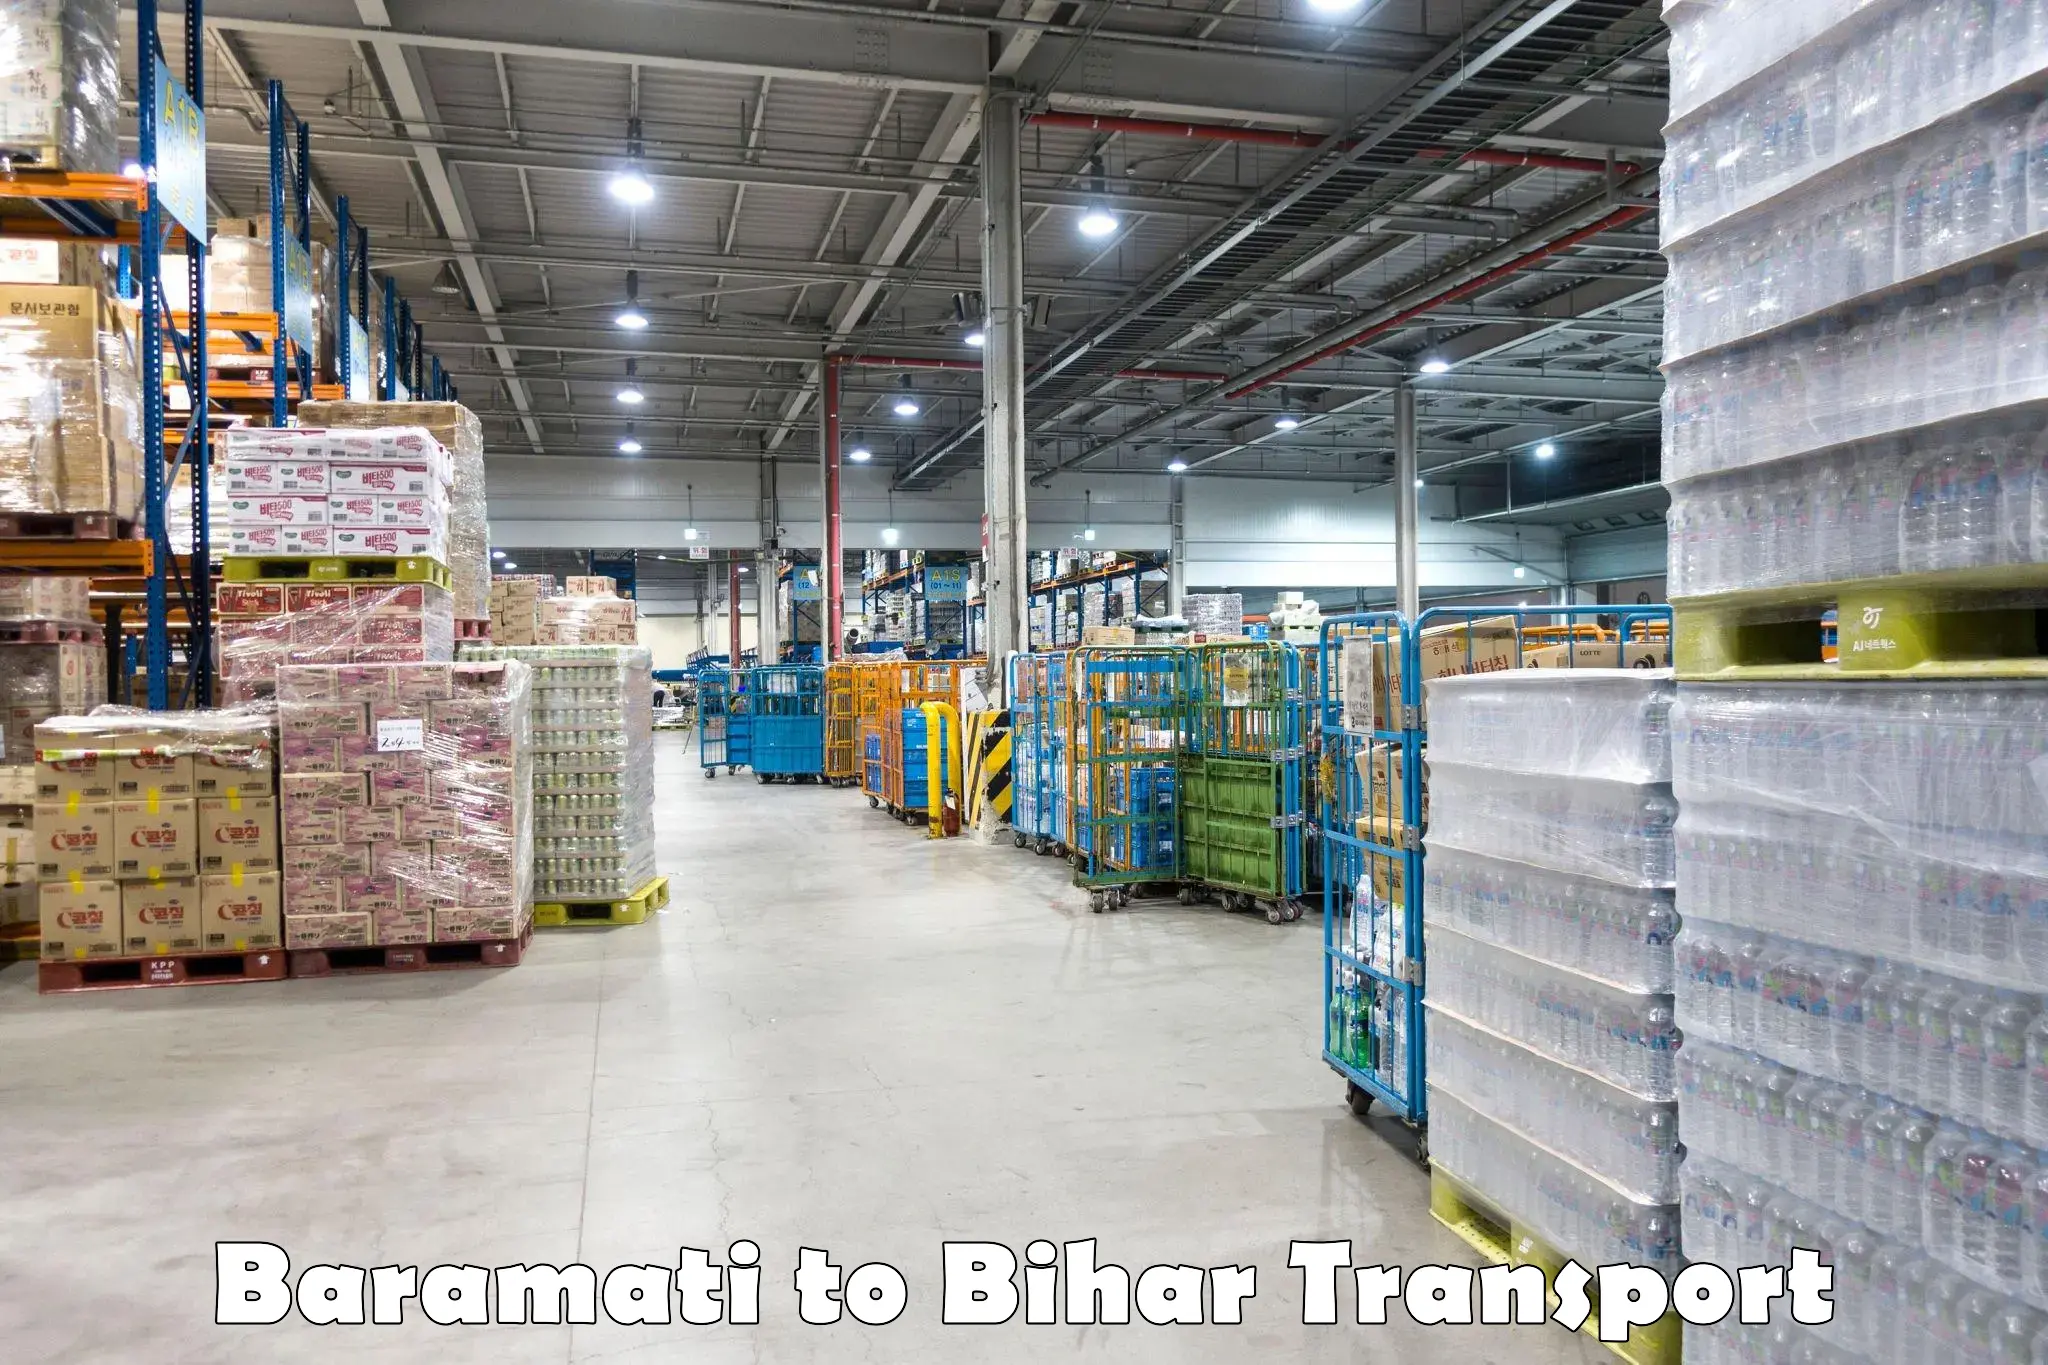 Daily transport service Baramati to Khizarsarai